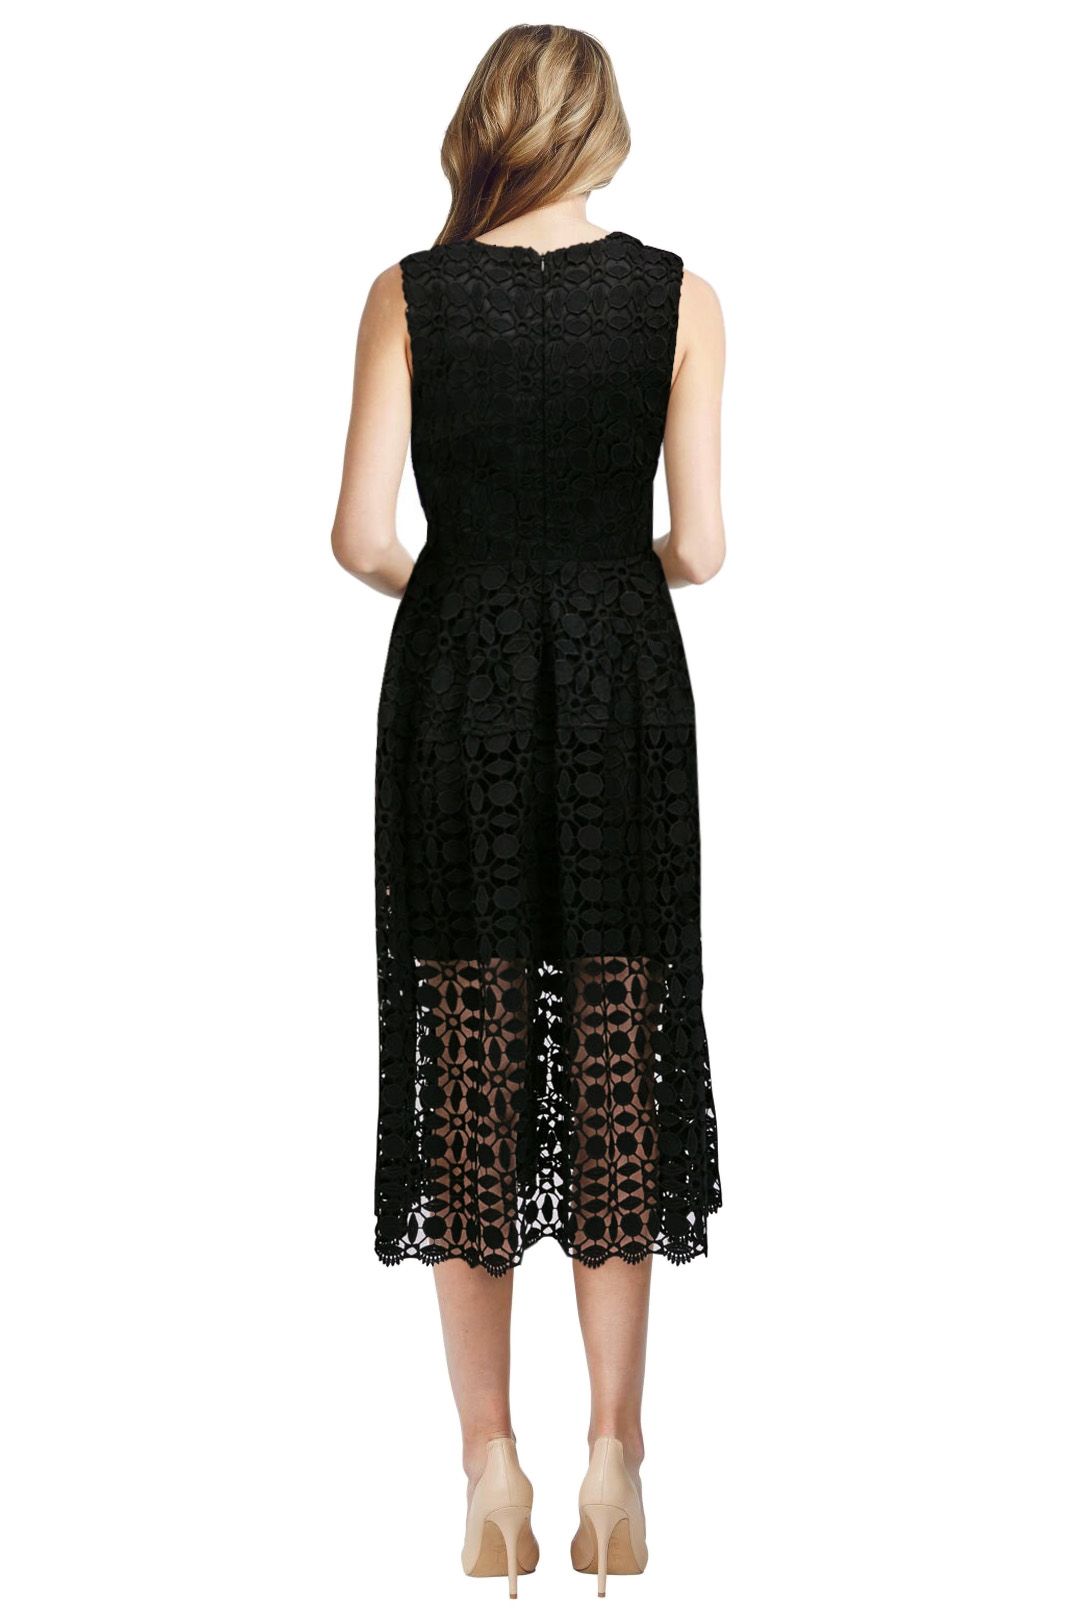 Mosaic Lace Ball Dress - Black - Back